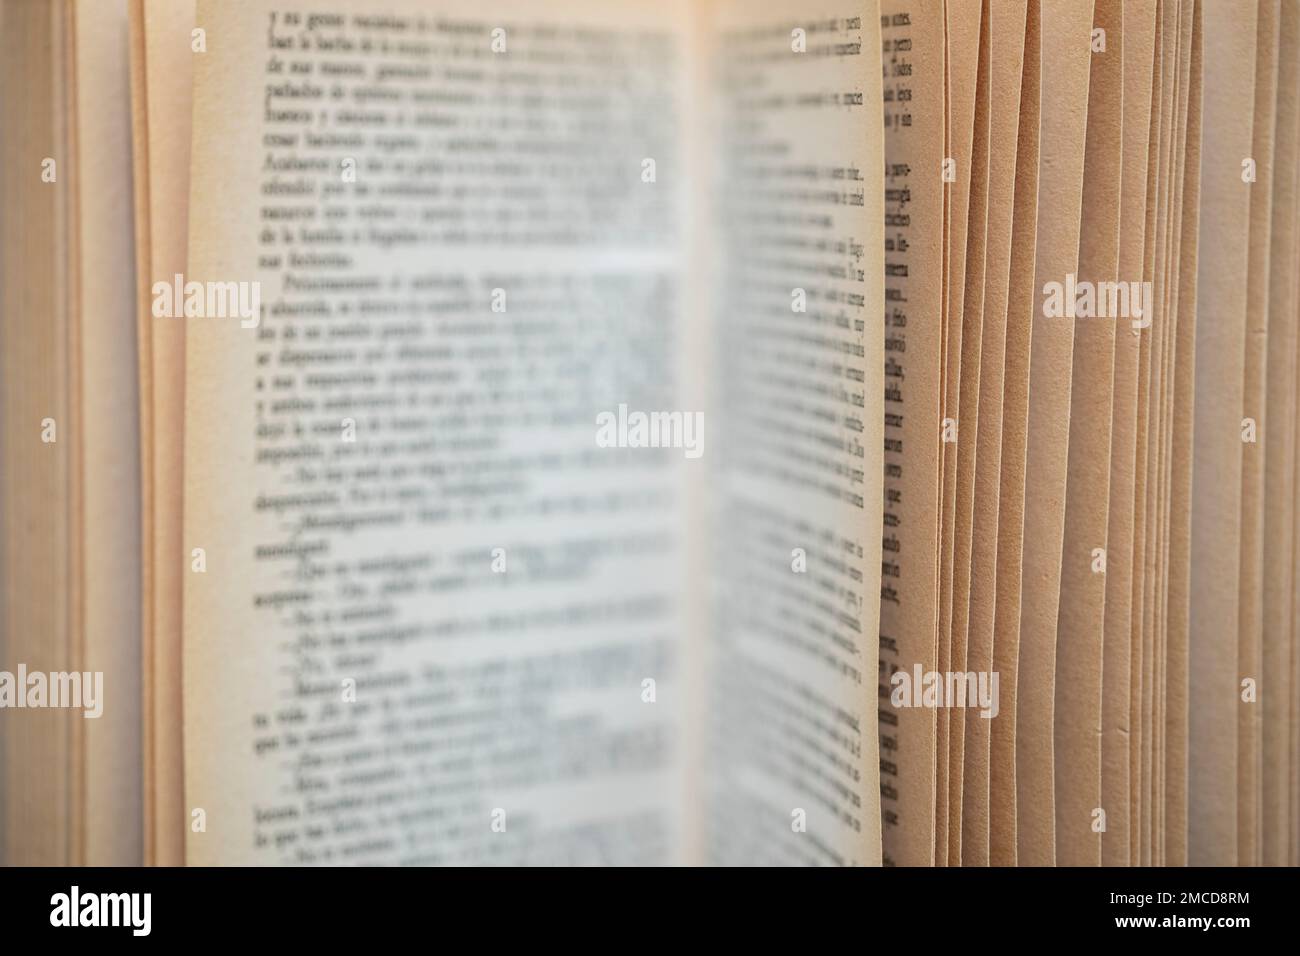 Detalle de un libro abierto con la escritura de las páginas desenfocada Stock Photo